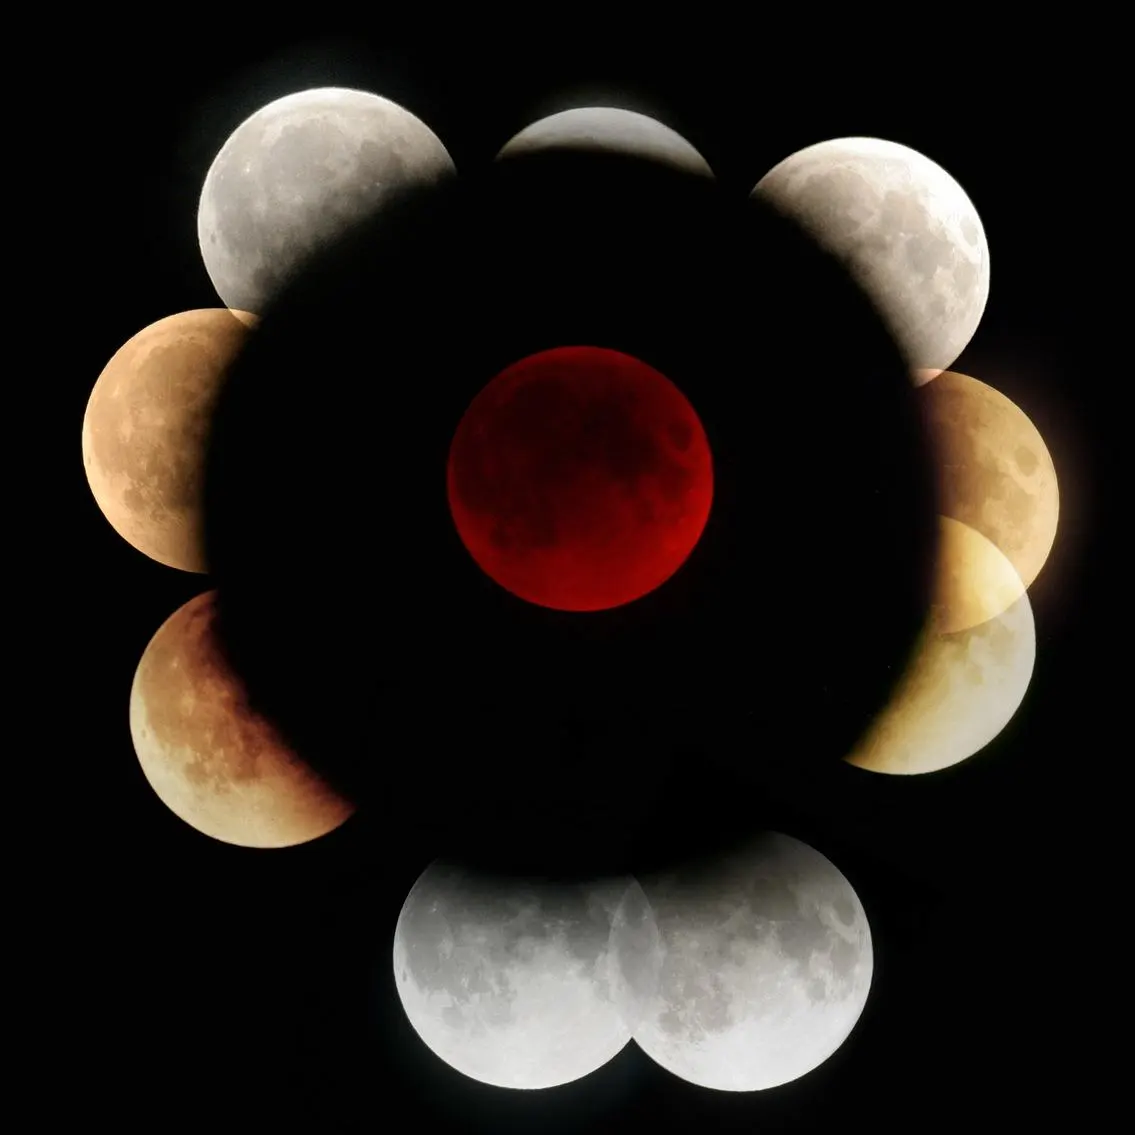 Eclipses Lunares